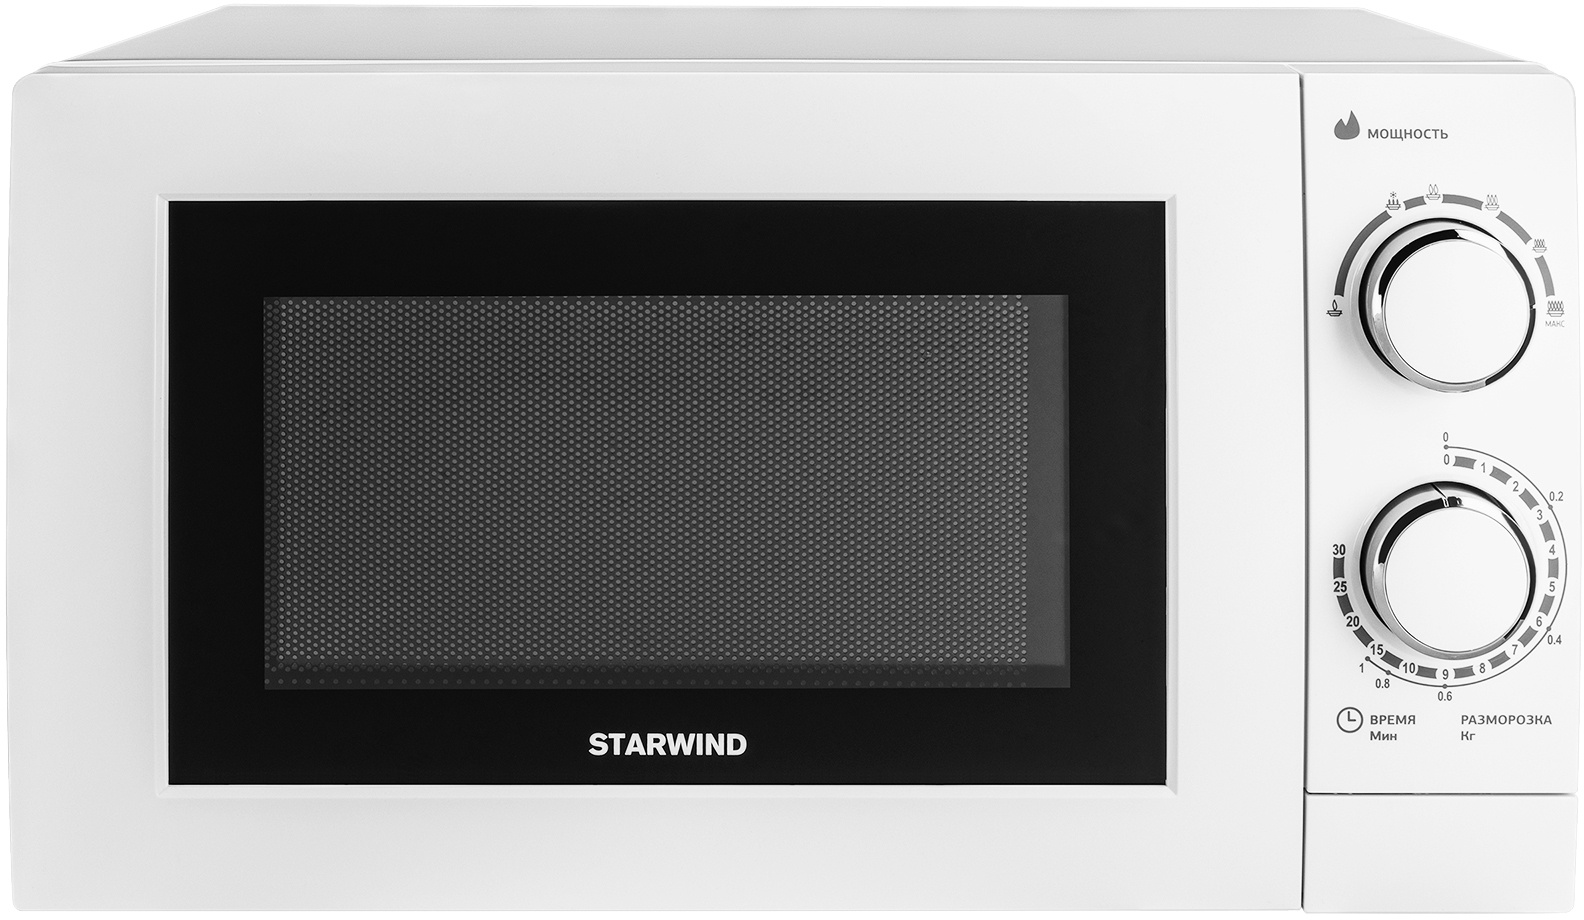 Микроволновая печь Starwind Smw 3820, цвет белый